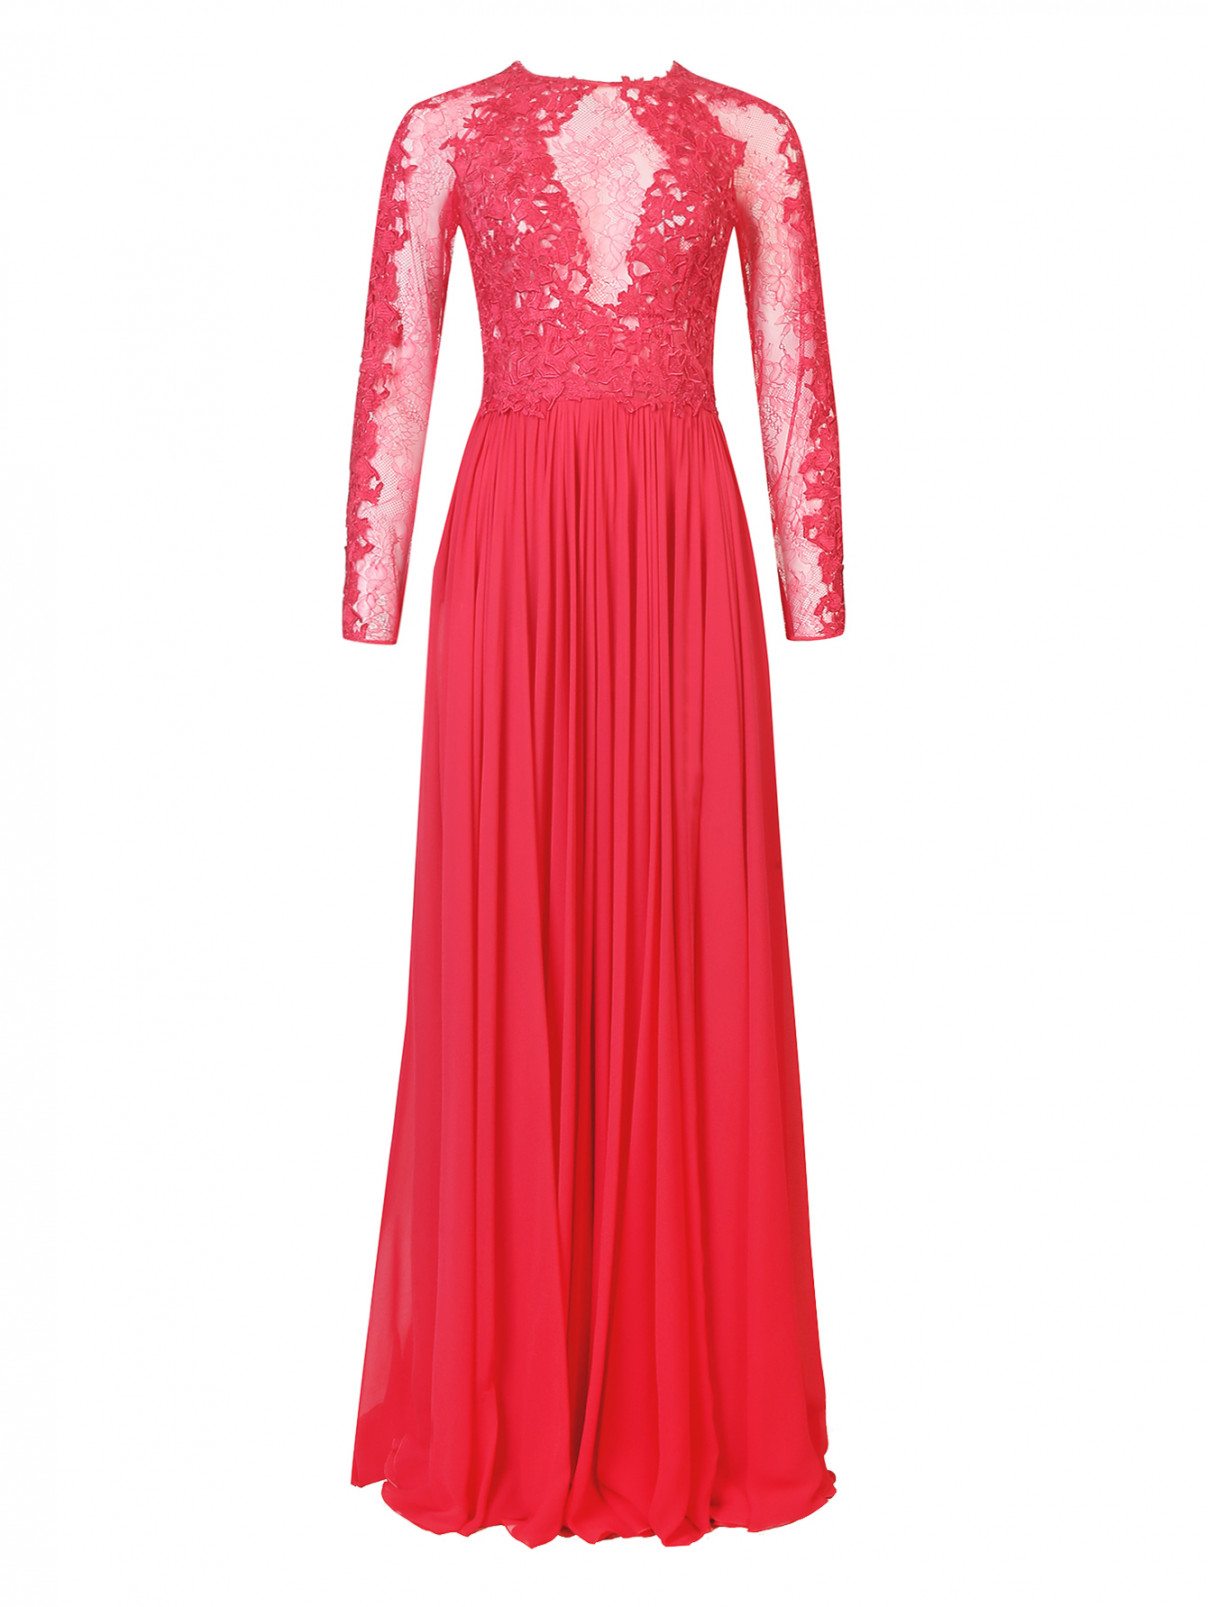 Платье в пол из шелка и кружева Zuhair Murad  –  Общий вид  – Цвет:  Красный